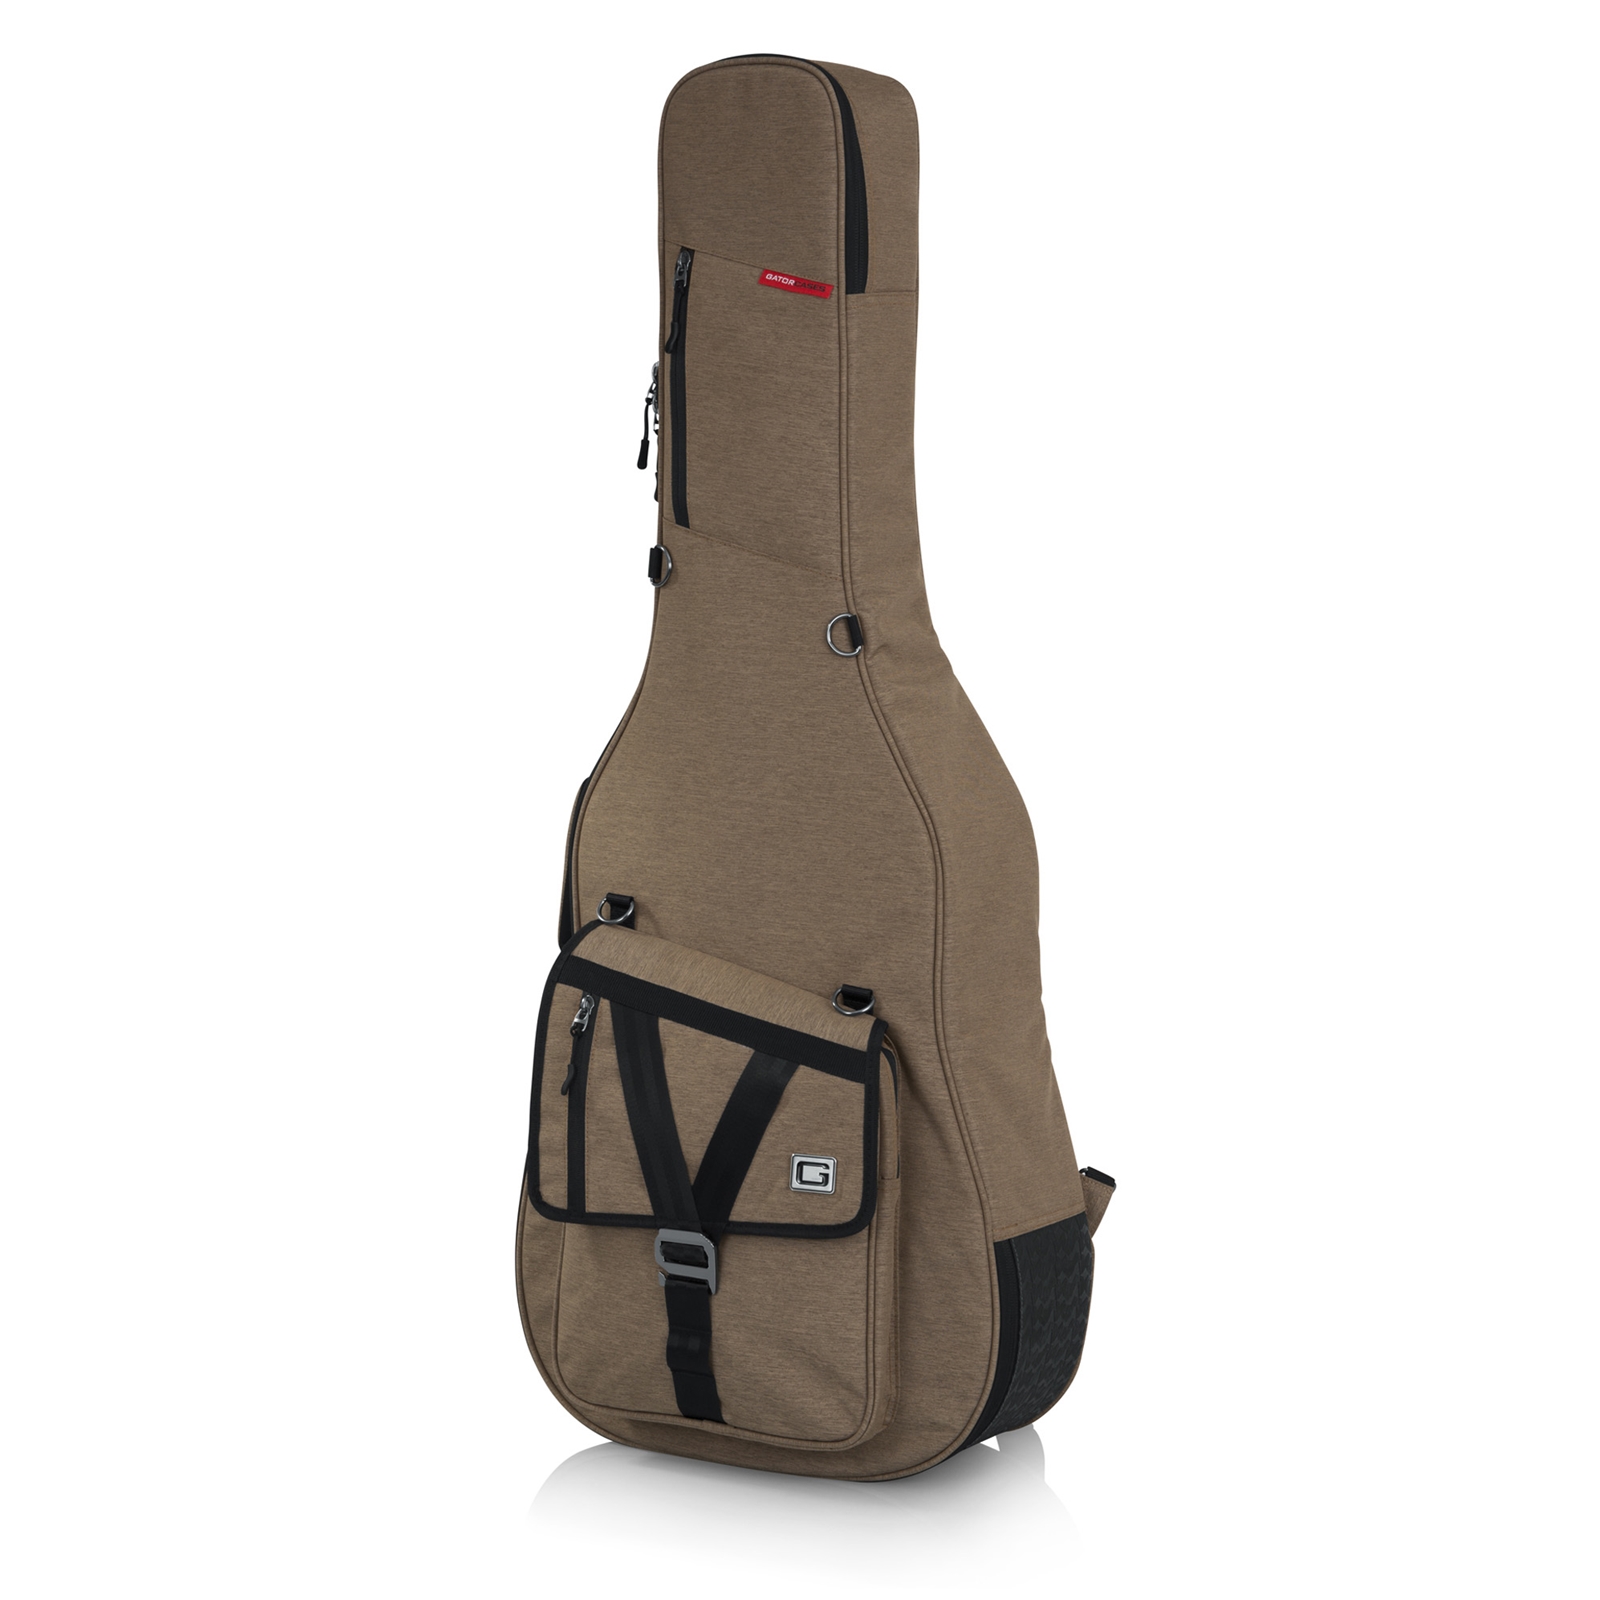 Gator Transit Series Acoustic Guitar Bag - Tan